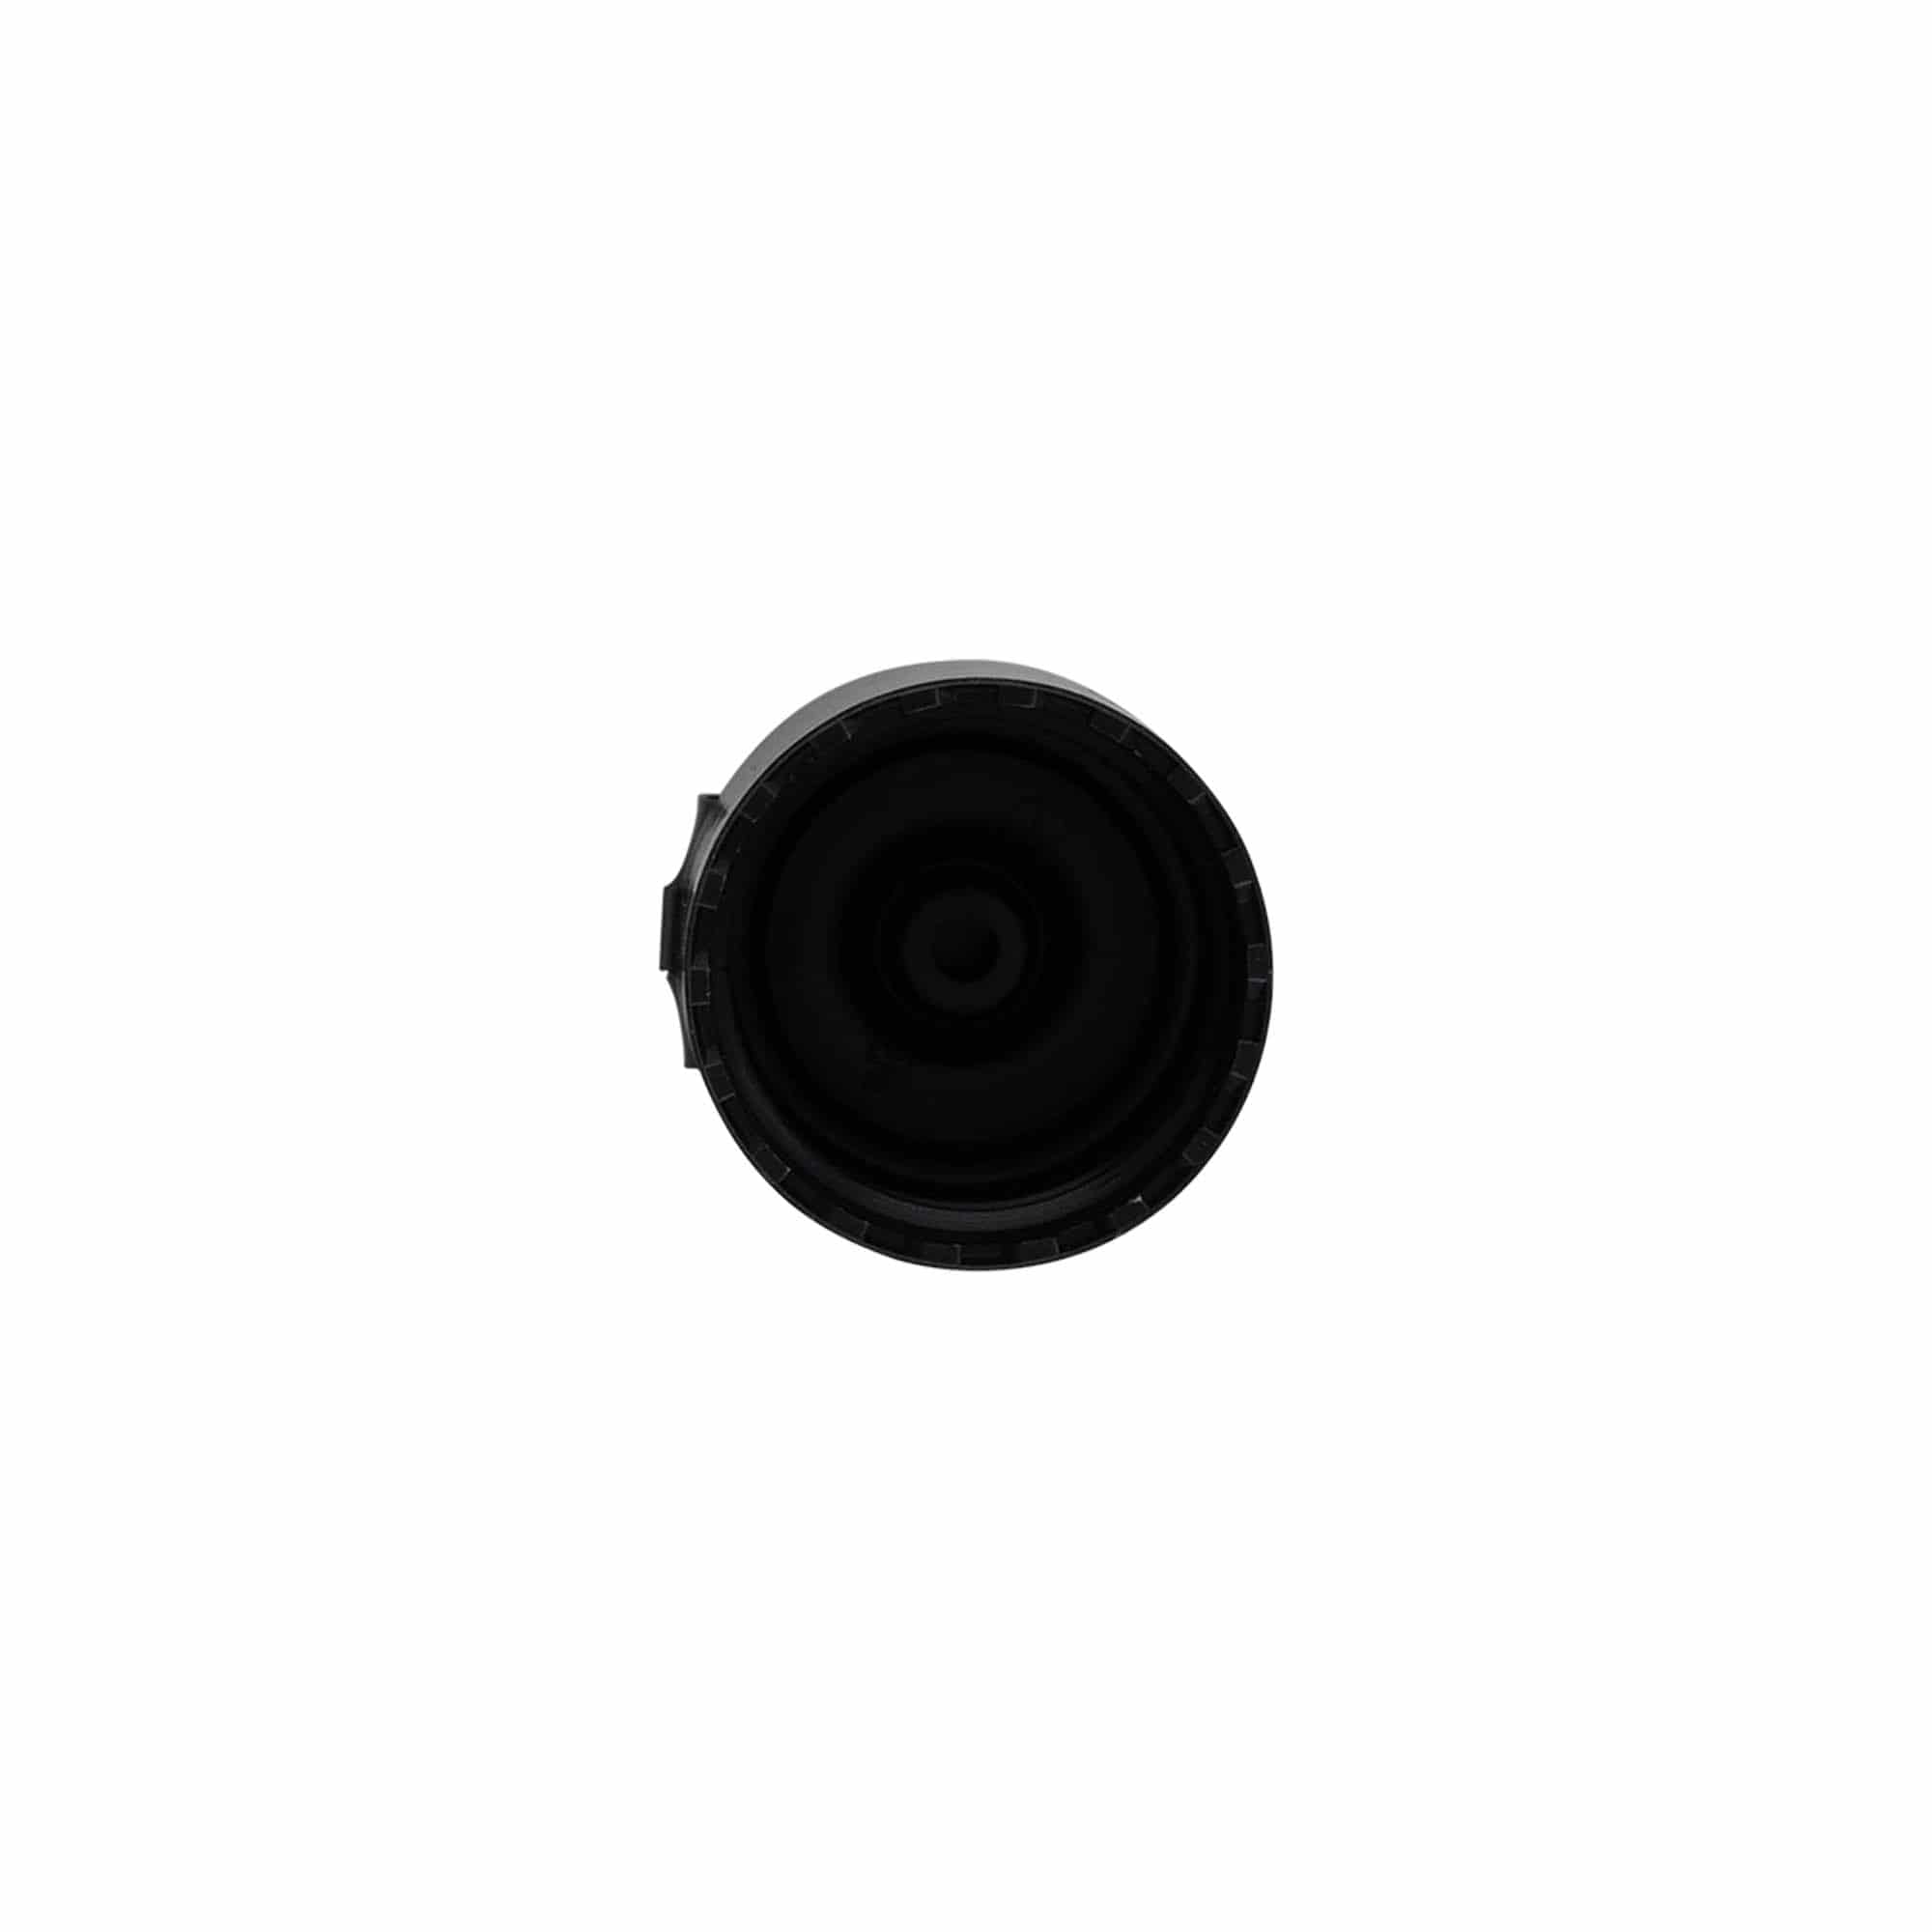 Schraubverschluss Klappscharnier, PP-Kunststoff, schwarz, für Mündung: GPI 24/410